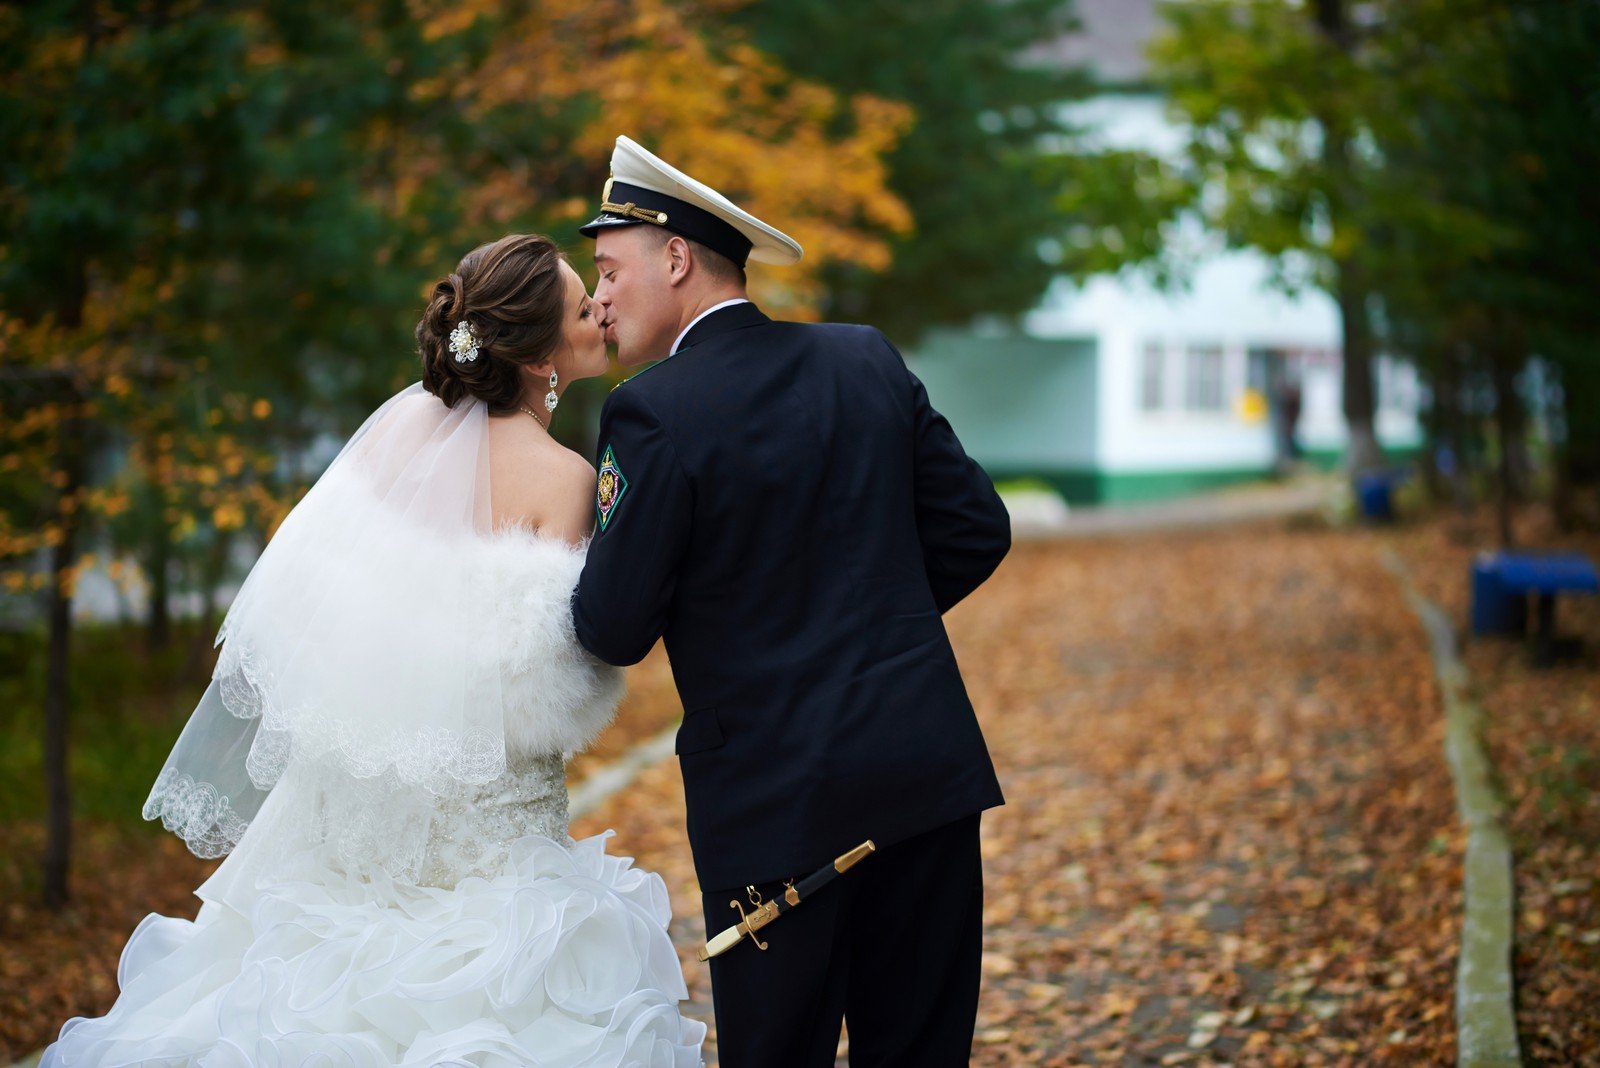 Жена военного 1. Свадьба в военном стиле. Военный с невестой. Свадьба военного и невесты. Жених военный.